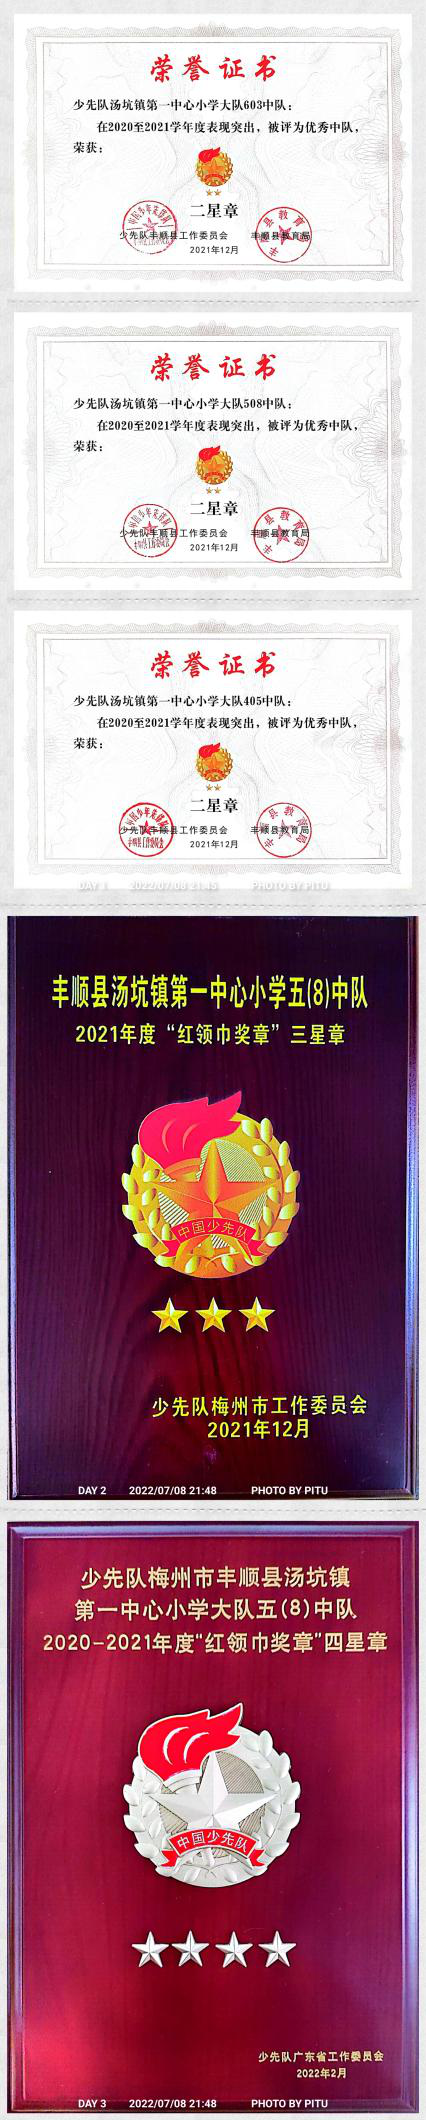 梅州市少工委颁发的集体三星章;2021年度"丰顺县少先队红旗大队",2021